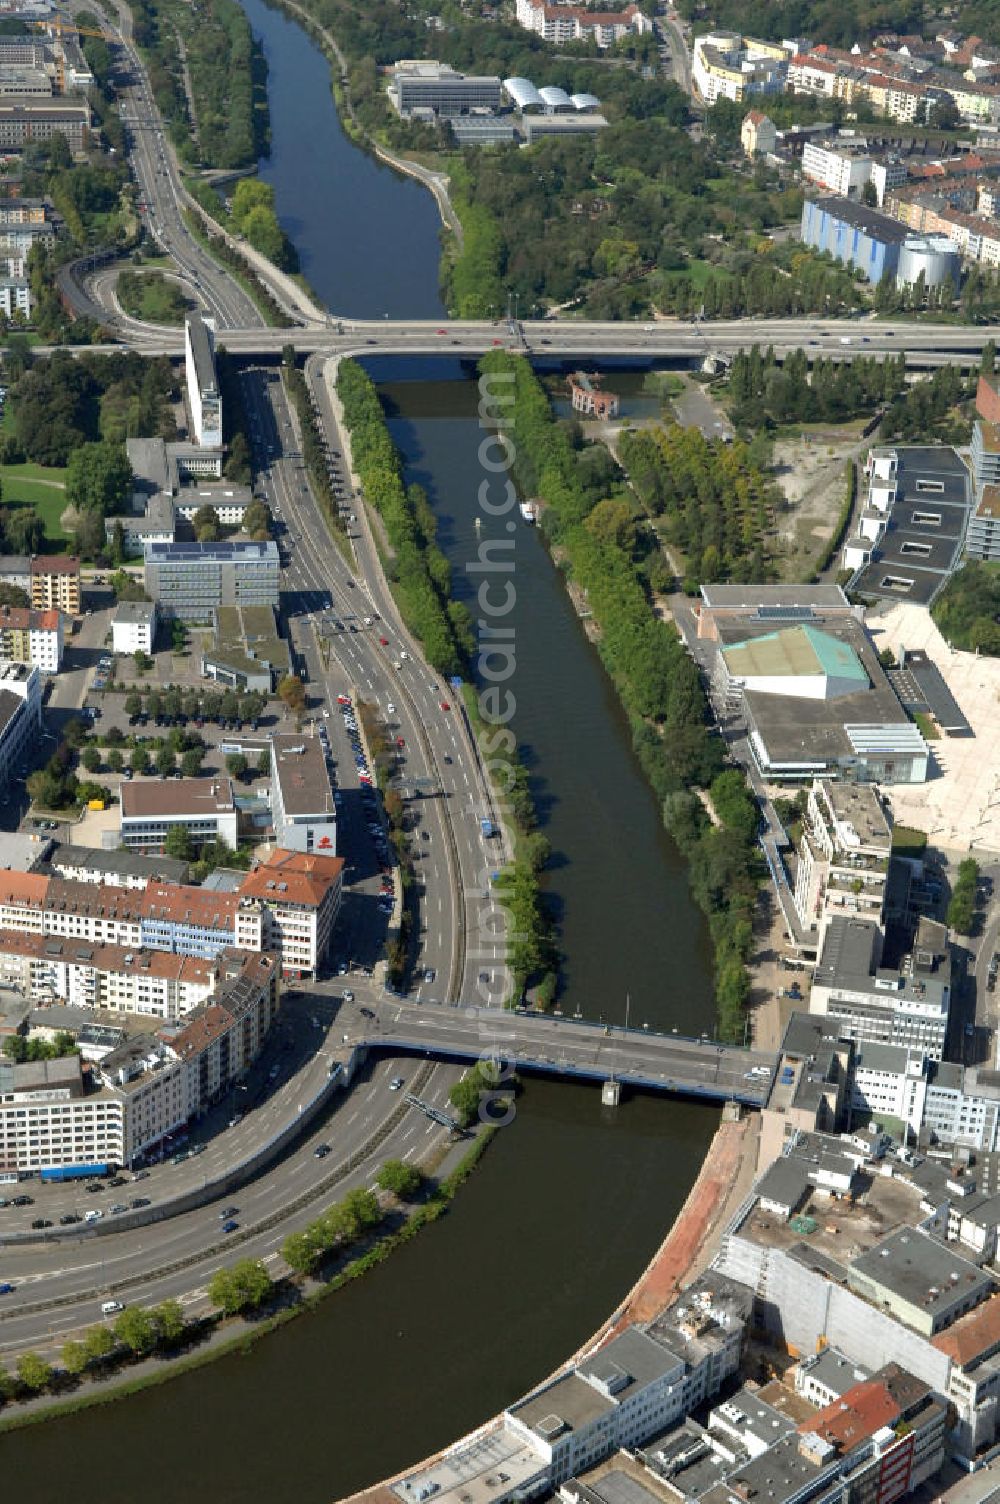 Aerial image Saarbrücken - Blick aus Osten entlang der Saar mit der Luisenbrücke und Westpangenbrücke in Saarbrücken im Saarland. Am linken Saarufer erstreckt sich die Autobahn 620 im Stadtteil Alt-Saarbrücken. Am rechten Saarufer erstreckt sich der Stadtteil Malstatt. View from east along the Saar river.